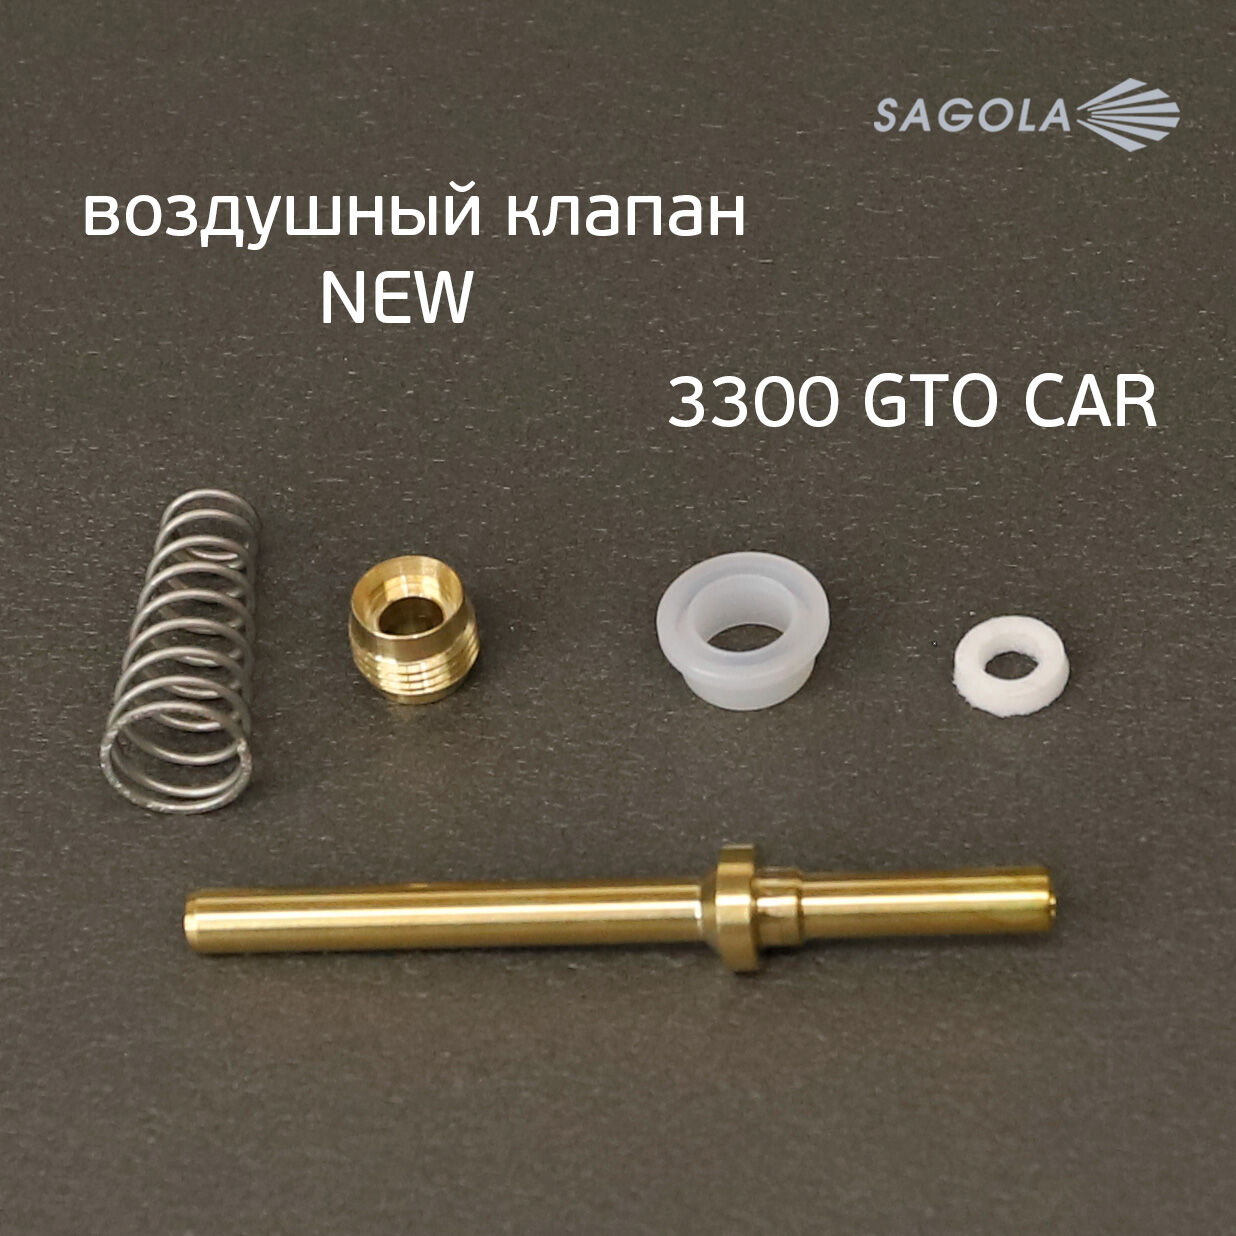 Воздушный клапан Sagola 3300 (обновленный) NEW для краскопульта 1